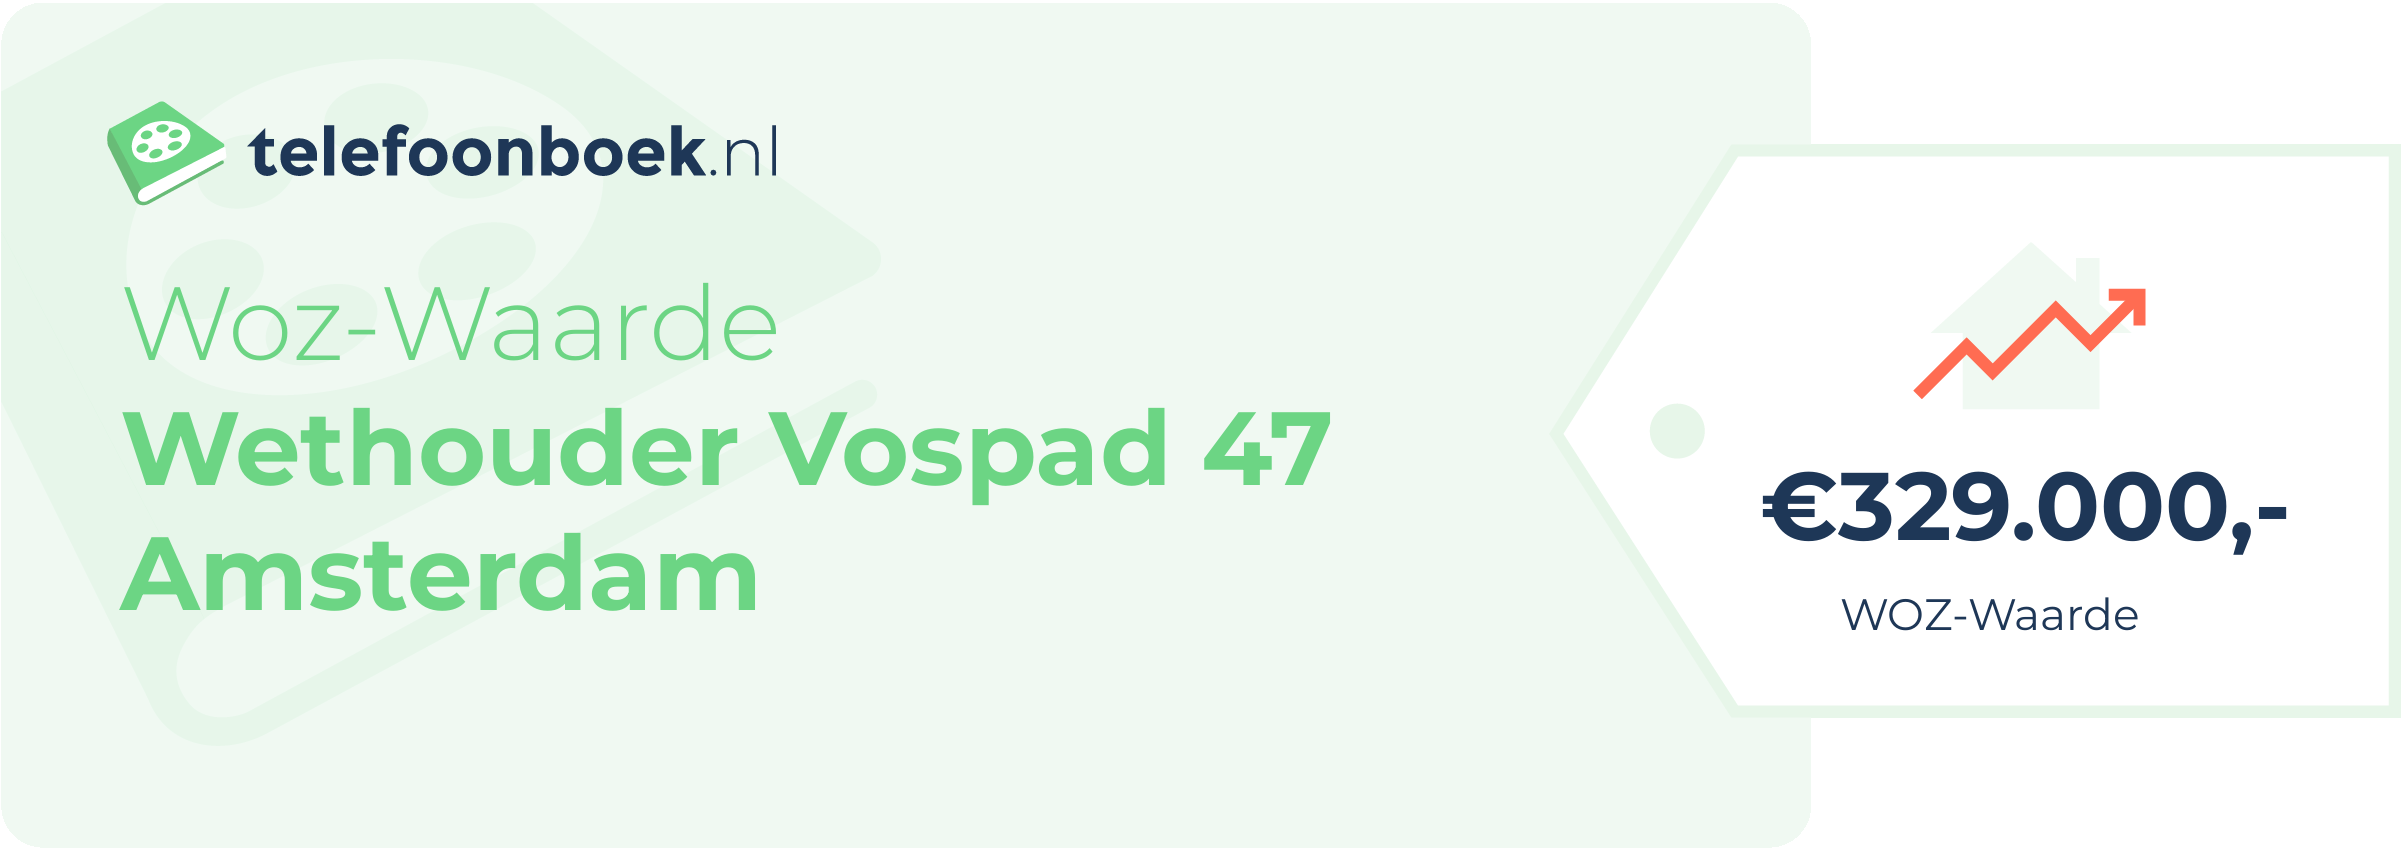 WOZ-waarde Wethouder Vospad 47 Amsterdam